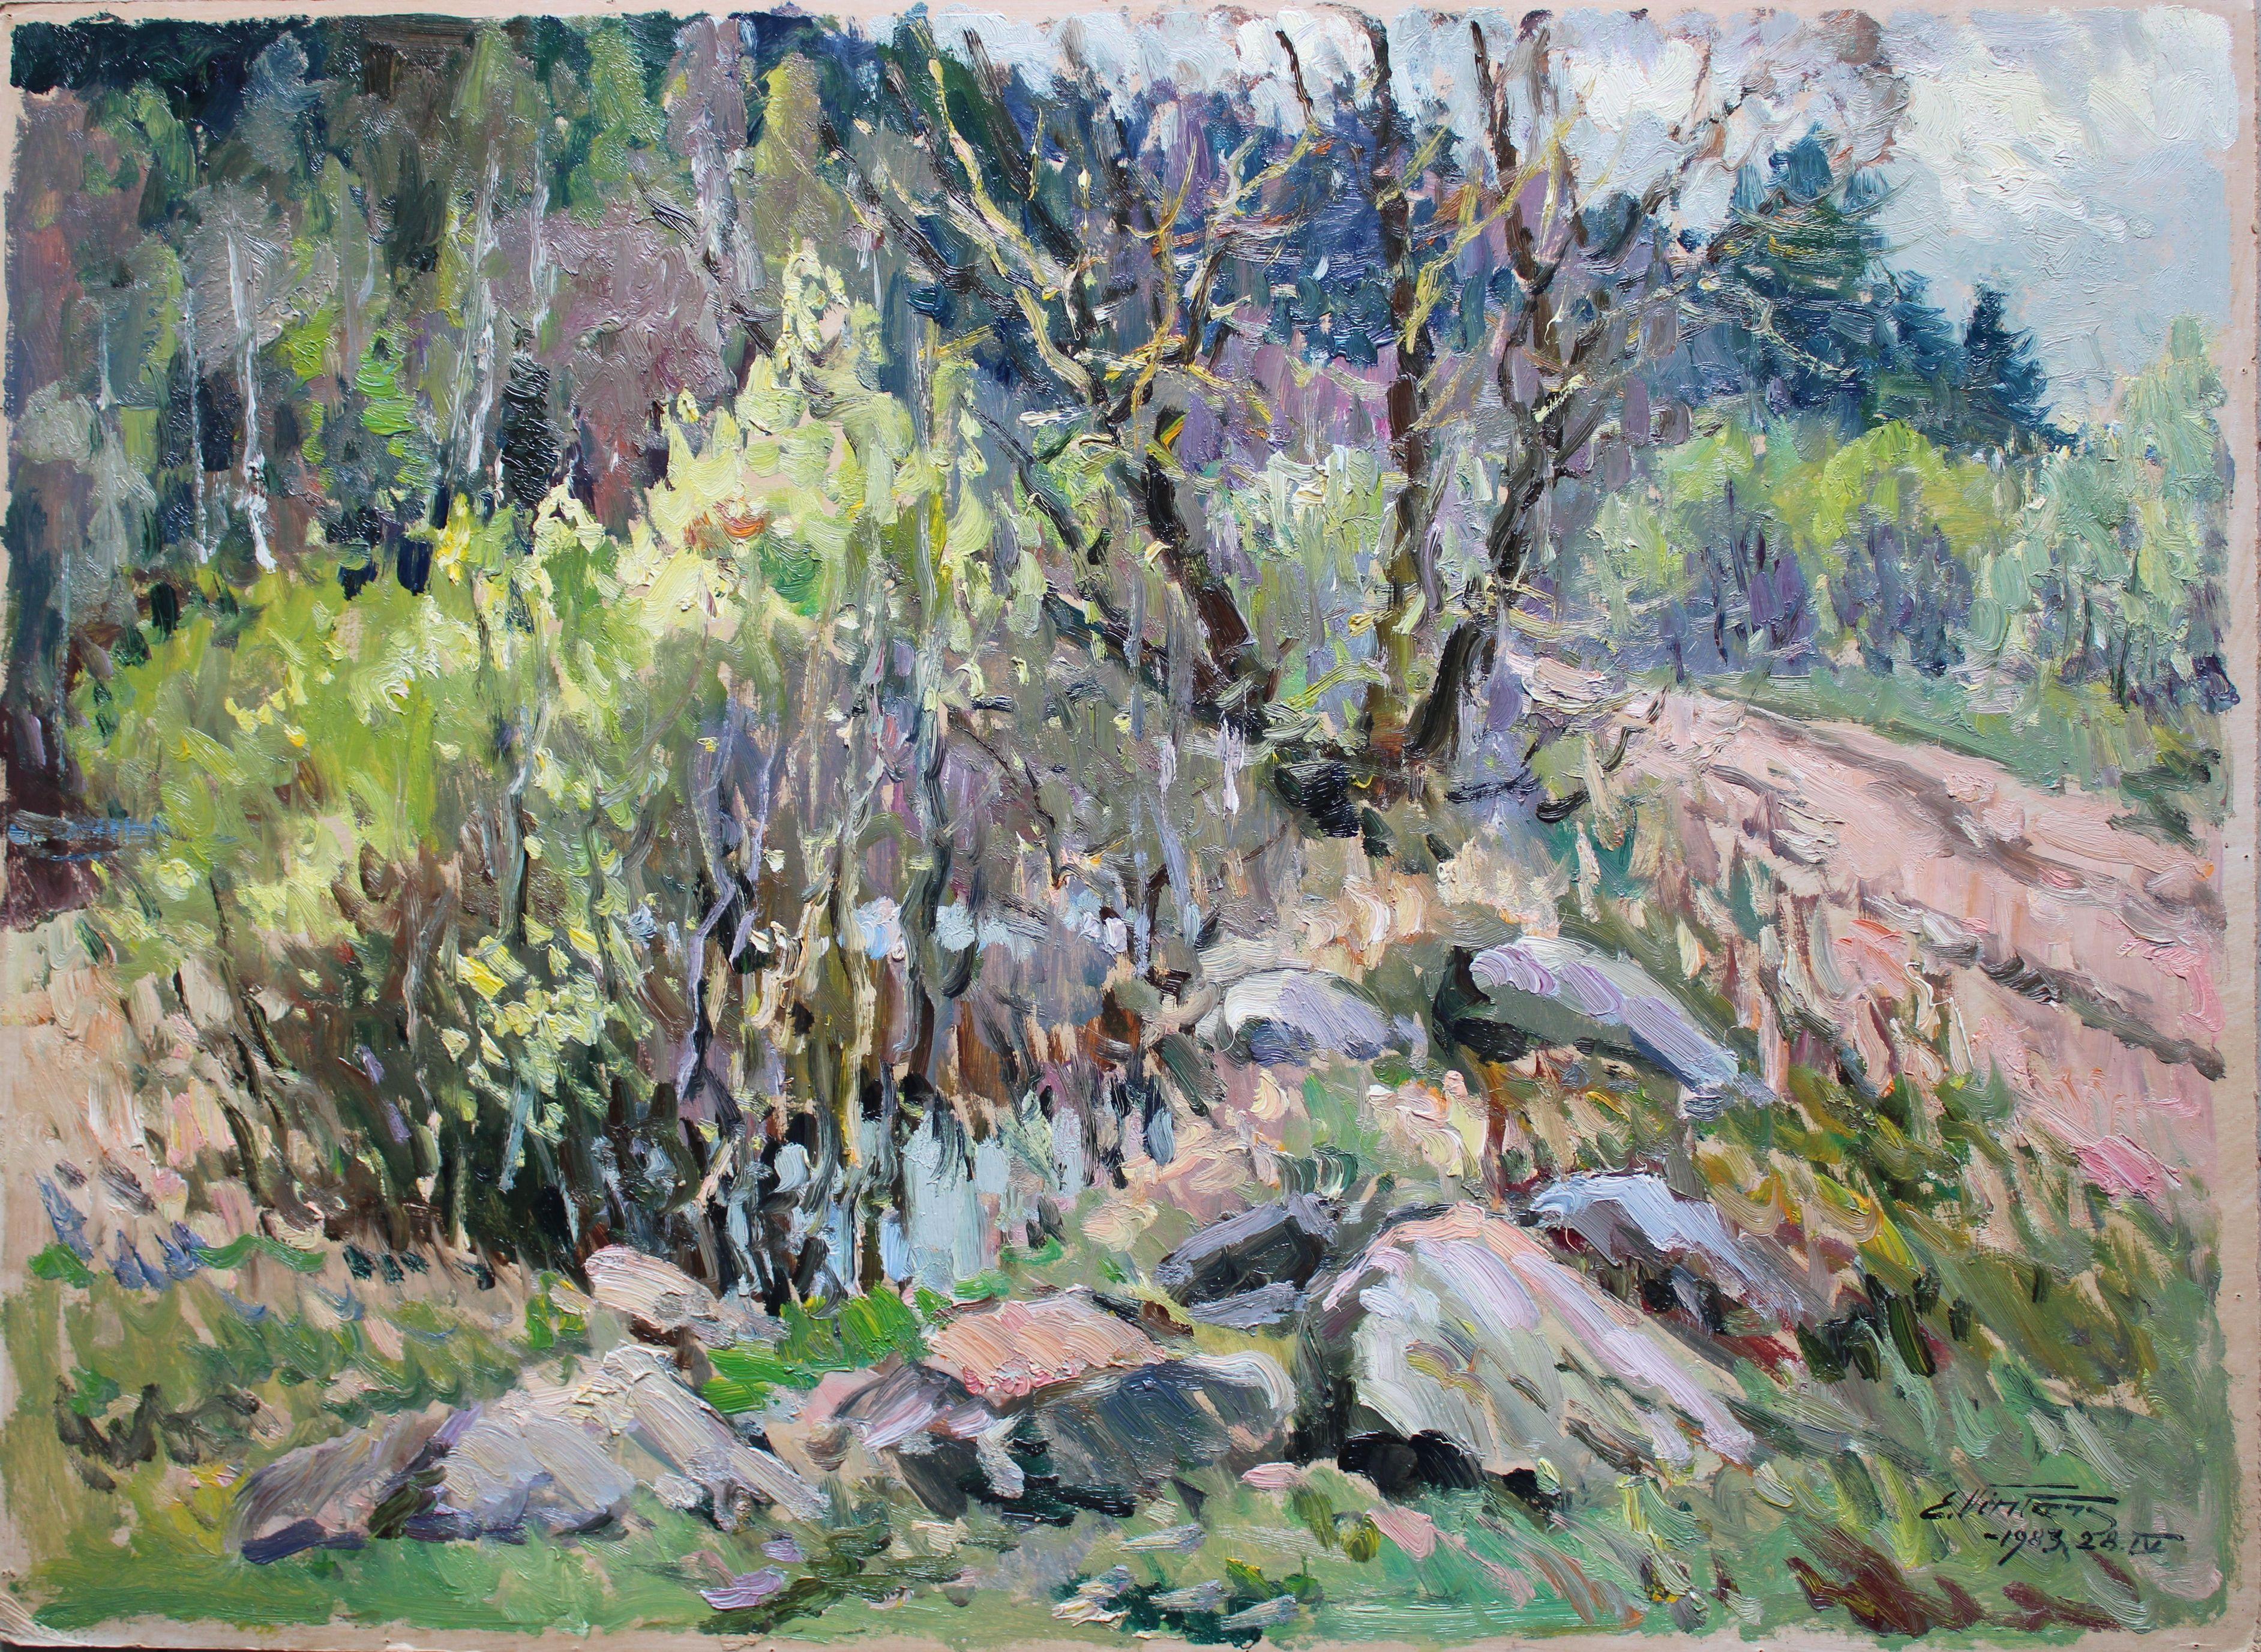 Boulders in der Nähe des Feldes. 1983, Karton, Öl, 68x94 cm (Impressionismus), Art, von Edgars Vinters